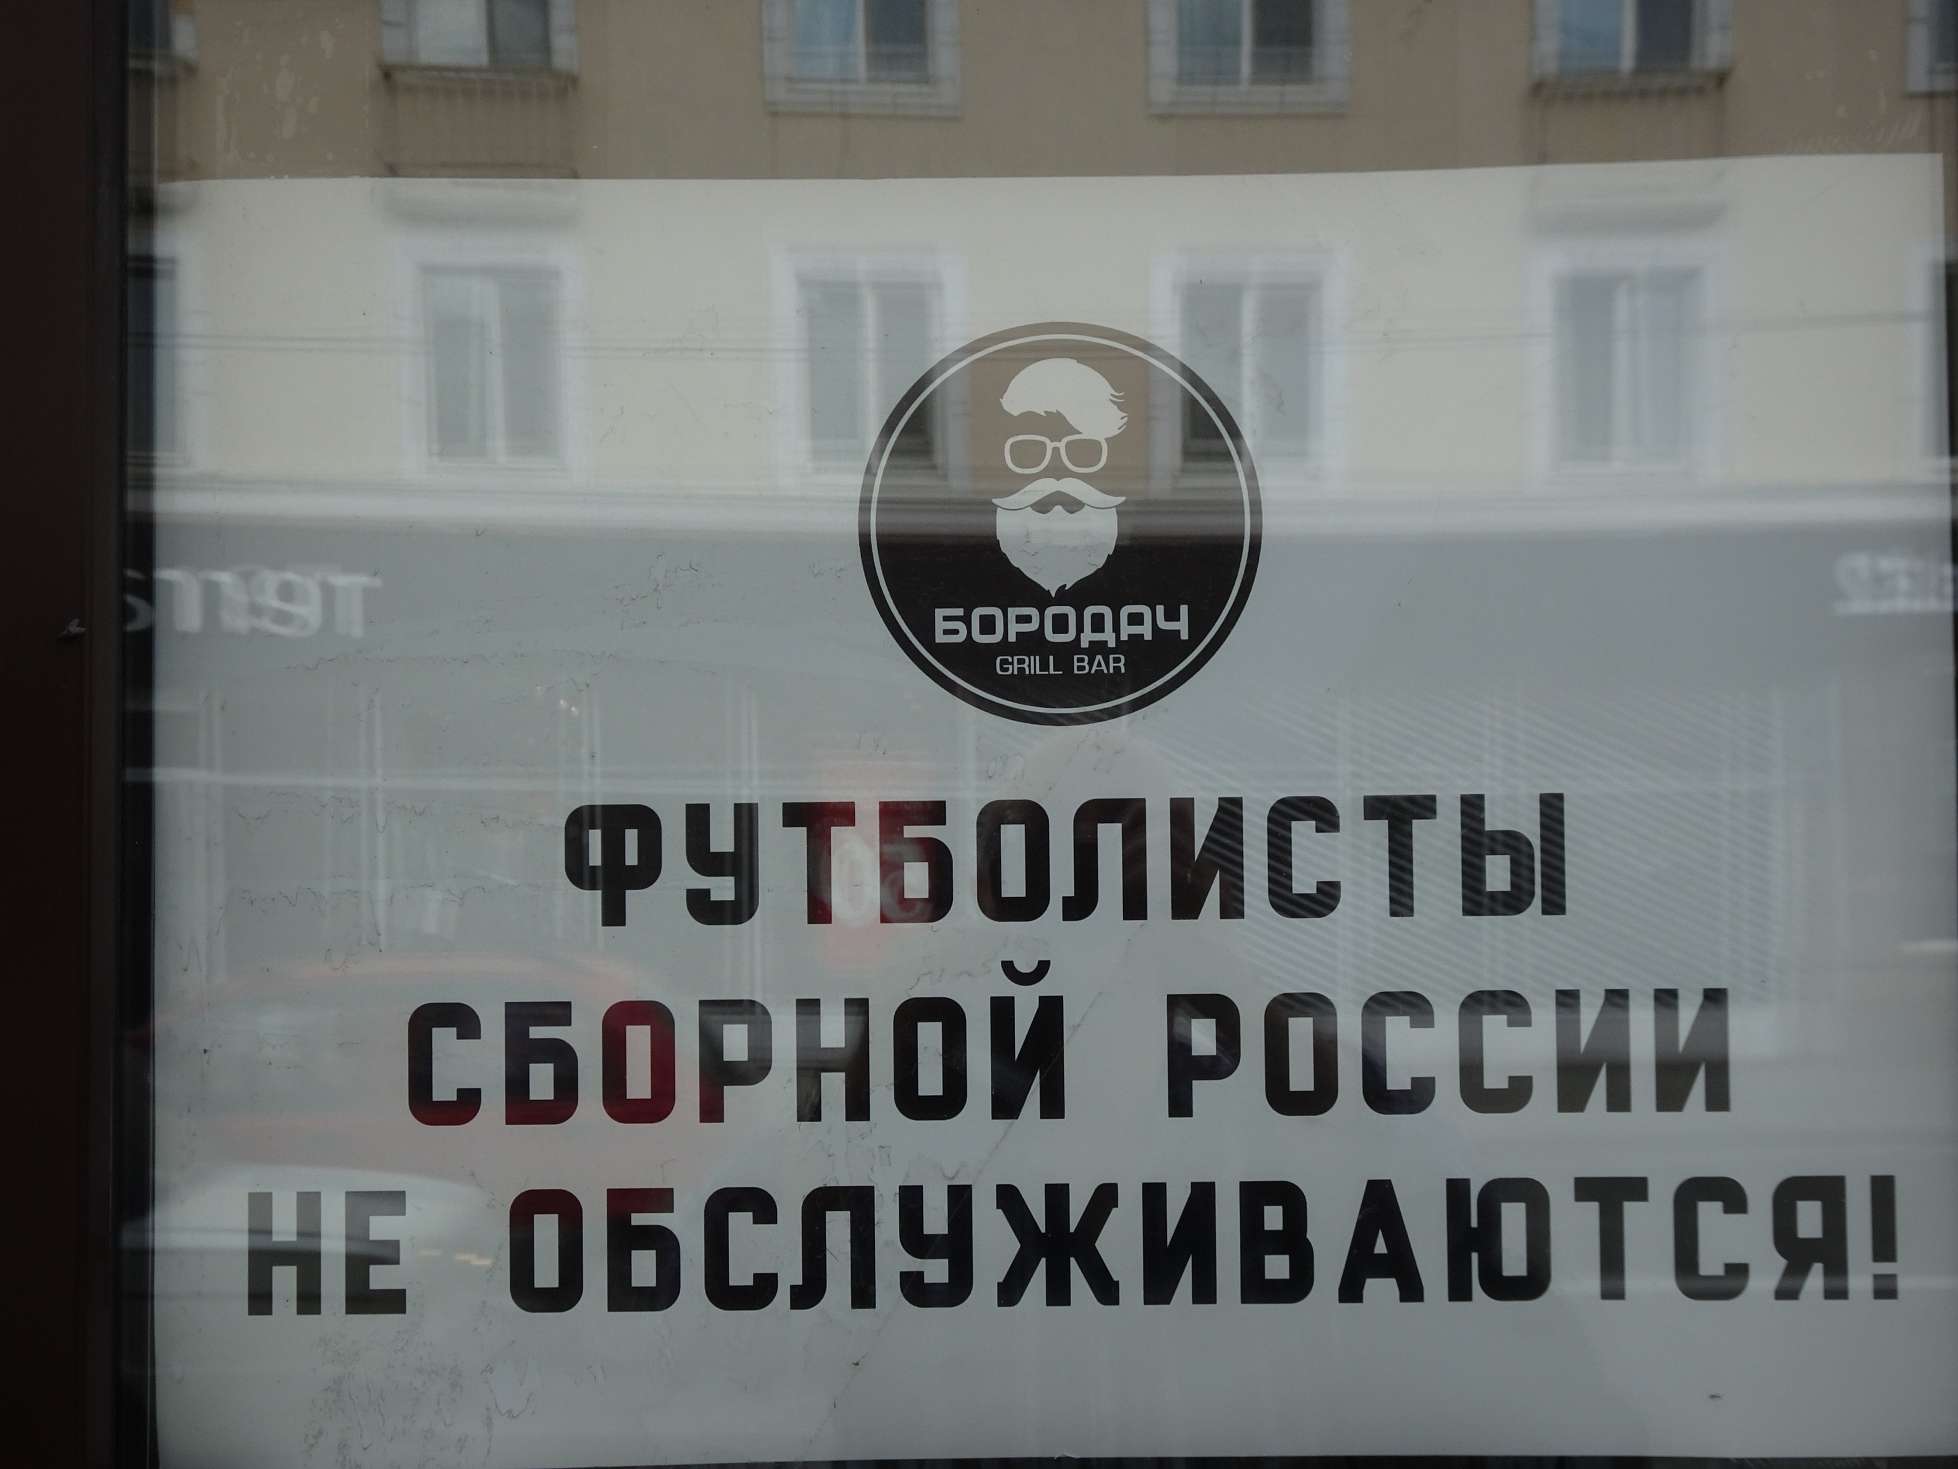 Übersetzung: "Spieler der russischen Nationalmannschaft werden hier nicht bedient" (als Reaktion auf die EM)